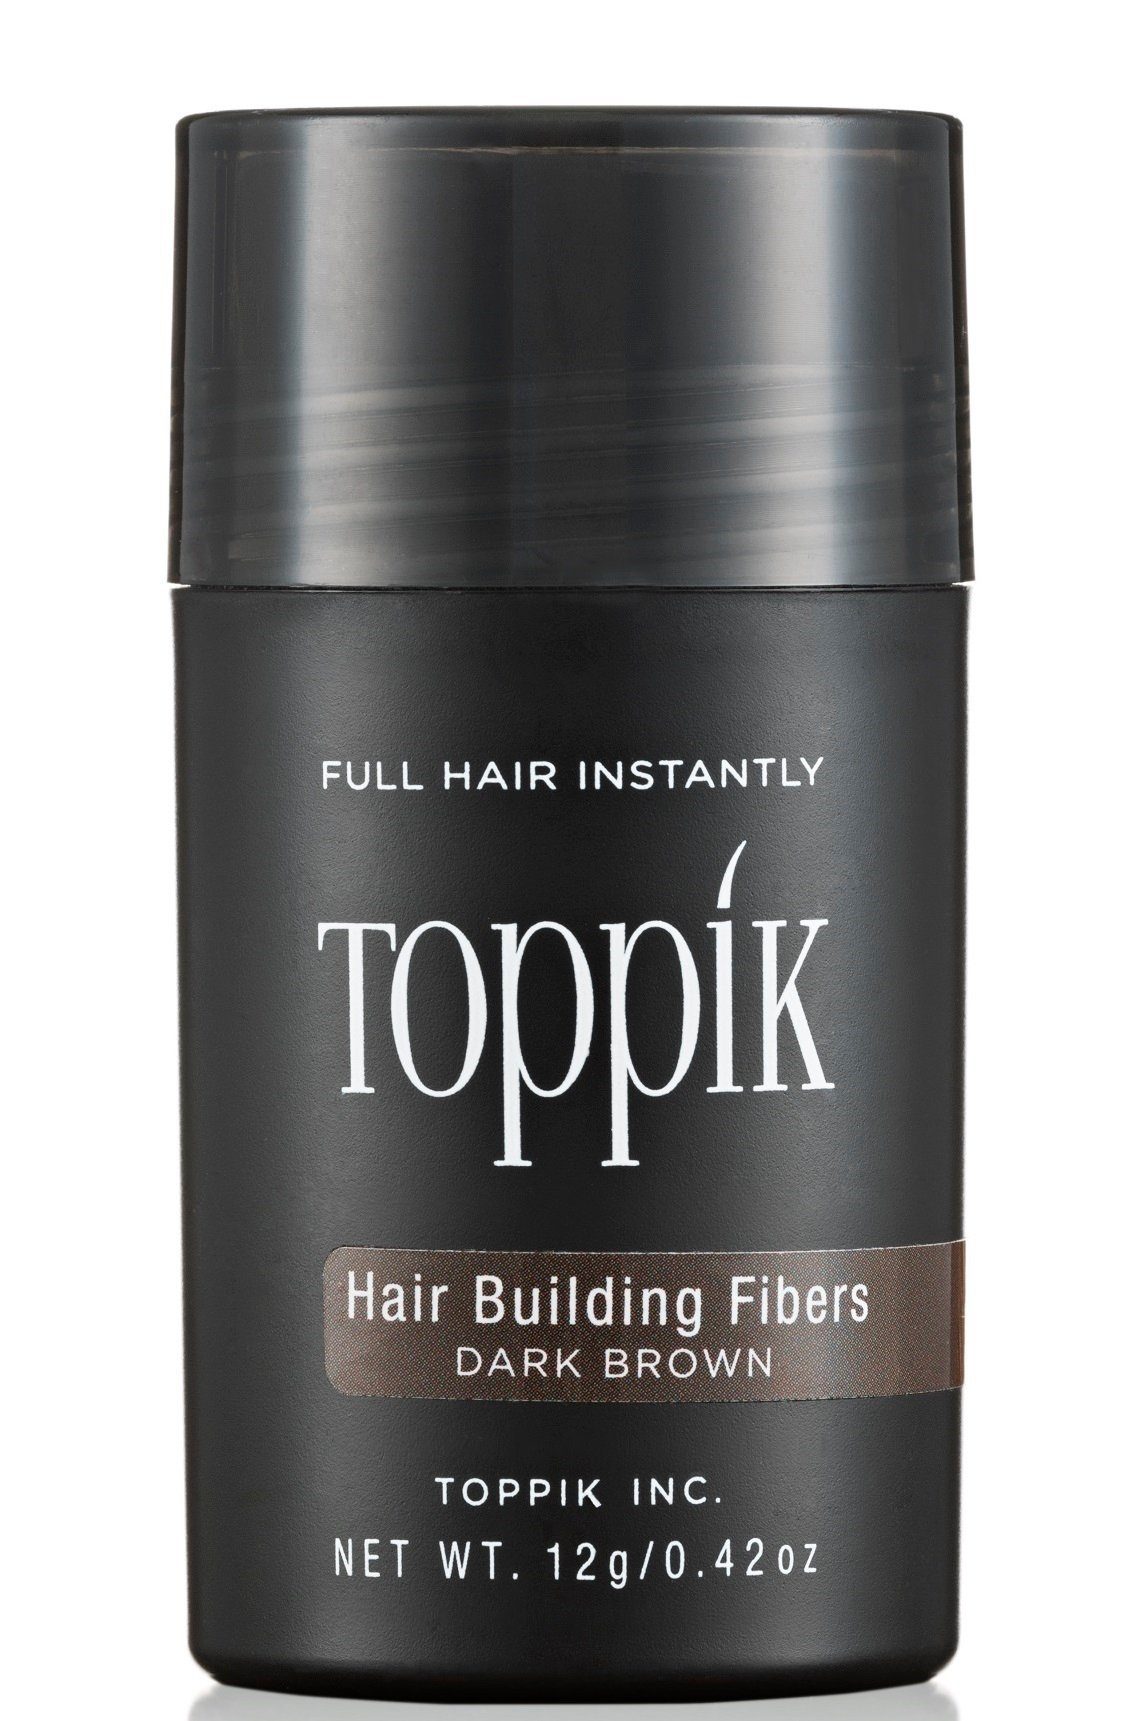 Hair Haarverdichtung SET g. Spar TOPPIK Rotbraun 12 + Set Fibers, Streuhaar, Haar Puder, Haarstyling-Set Spray Haarfasern 118ml. TOPPIK Fixier